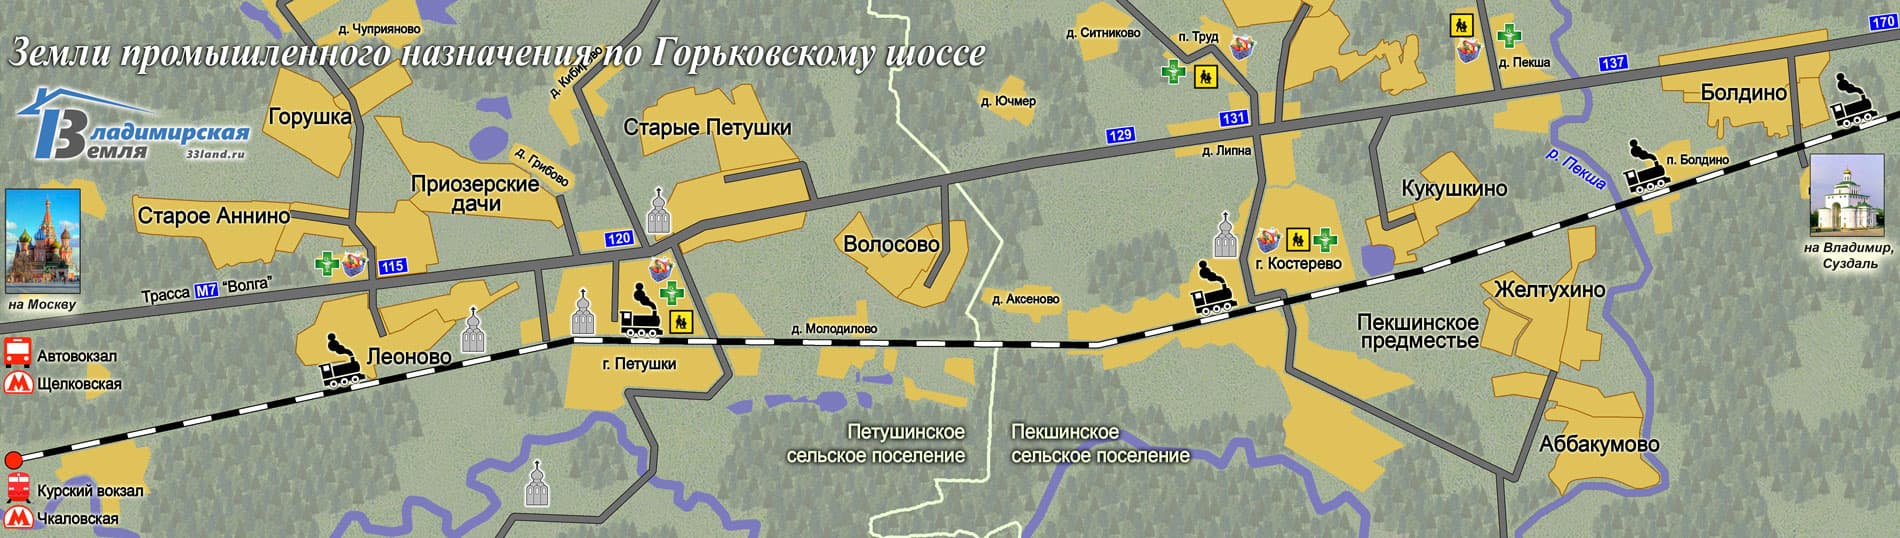 Участки промышленного назначения по Горьковскому шоссе